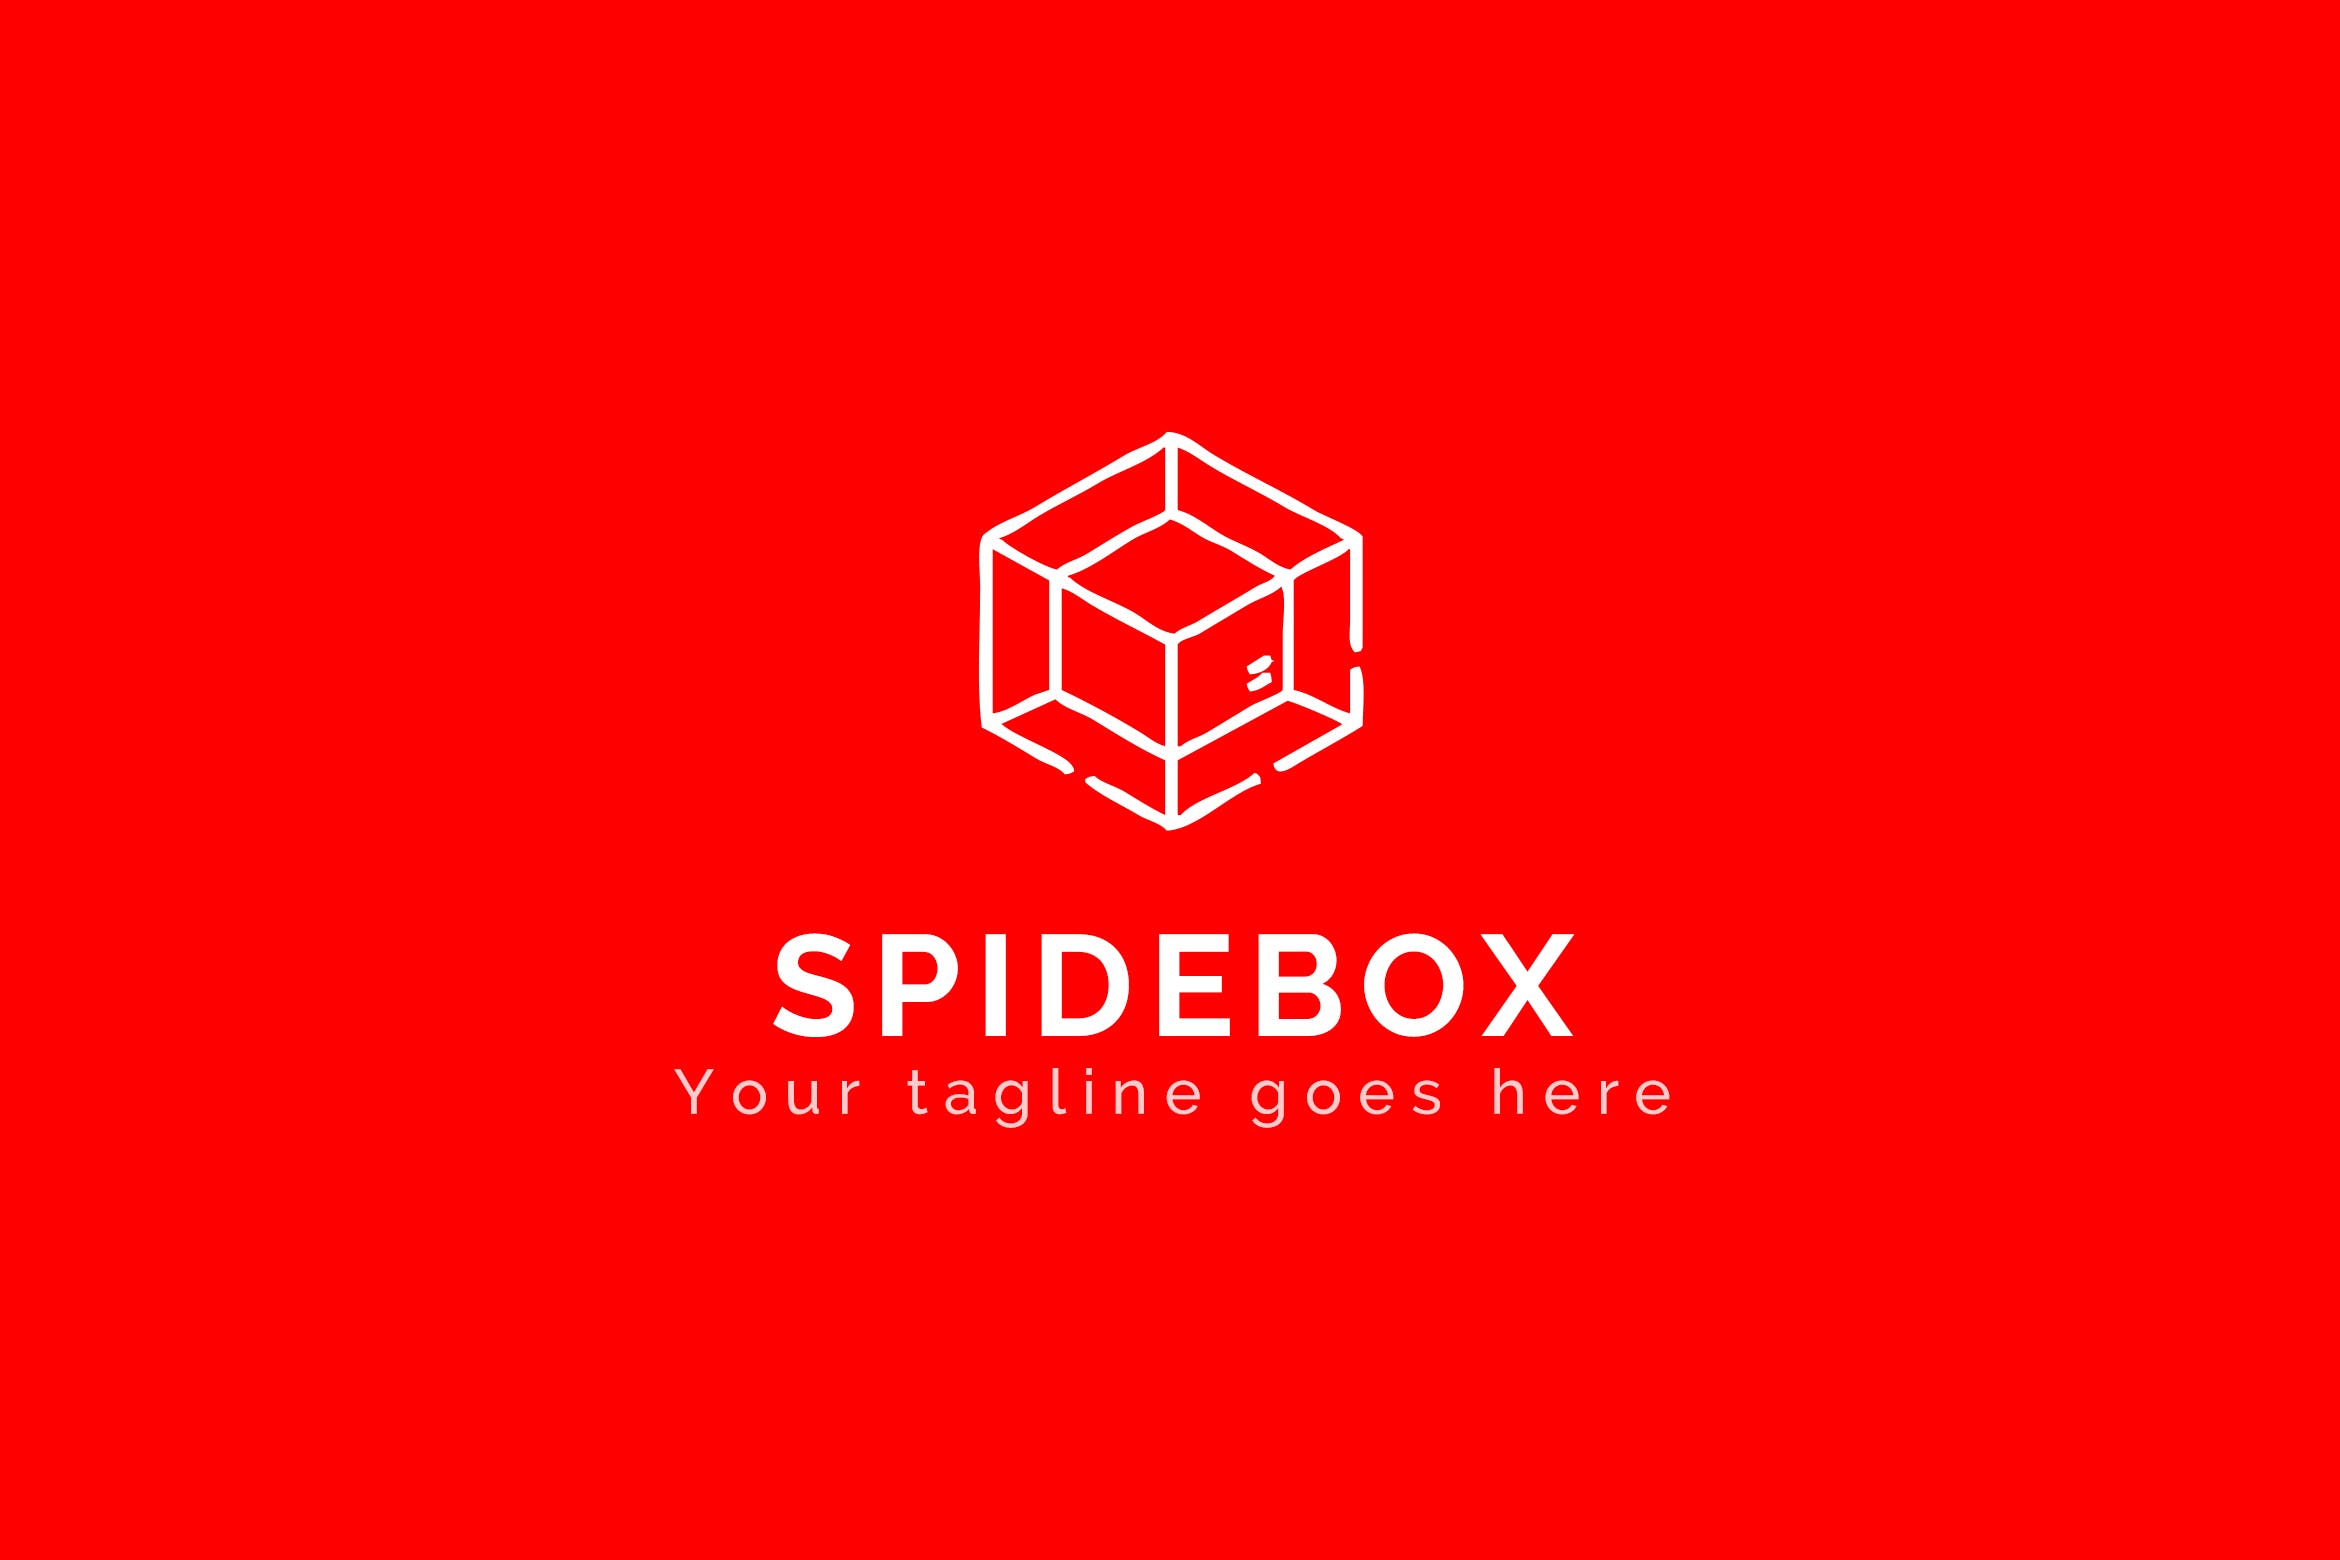 蜘蛛网图形品牌Logo设计素材库精选模板 Spidebox – Premium Logo Template插图